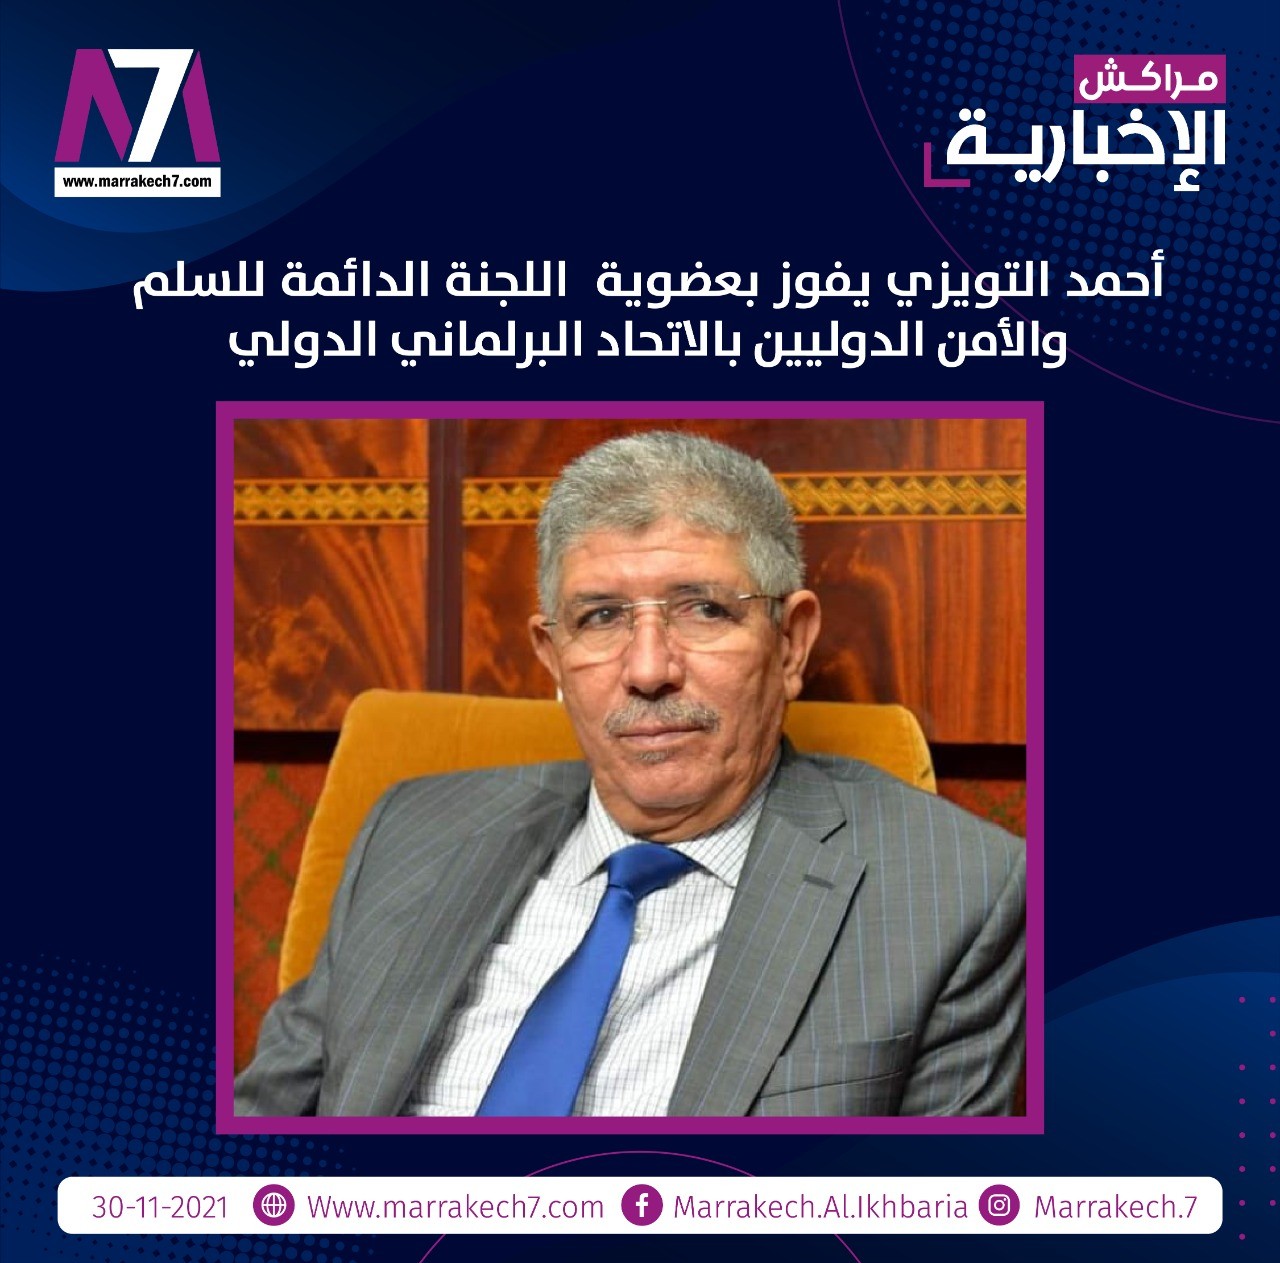 أحمد التويزي يفوز بعضوية اللجنة الدائمة للسلم والأمن الدوليين بالاتحاد البرلماني الدولي